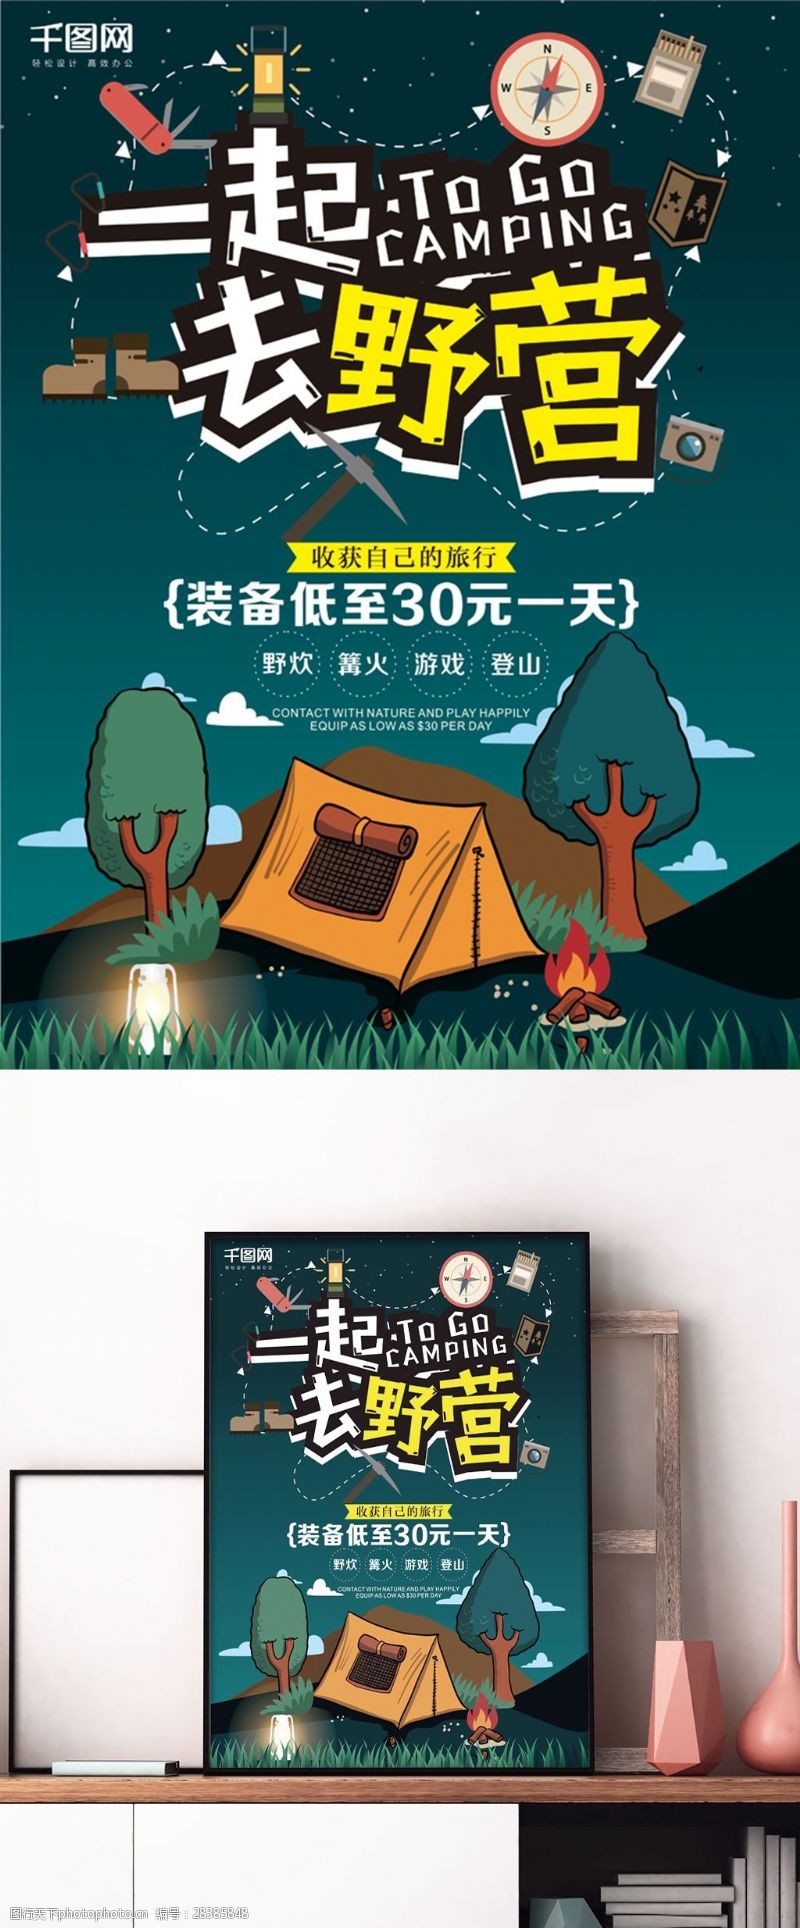 卡通风格户外野营露营装备旅游活动海报